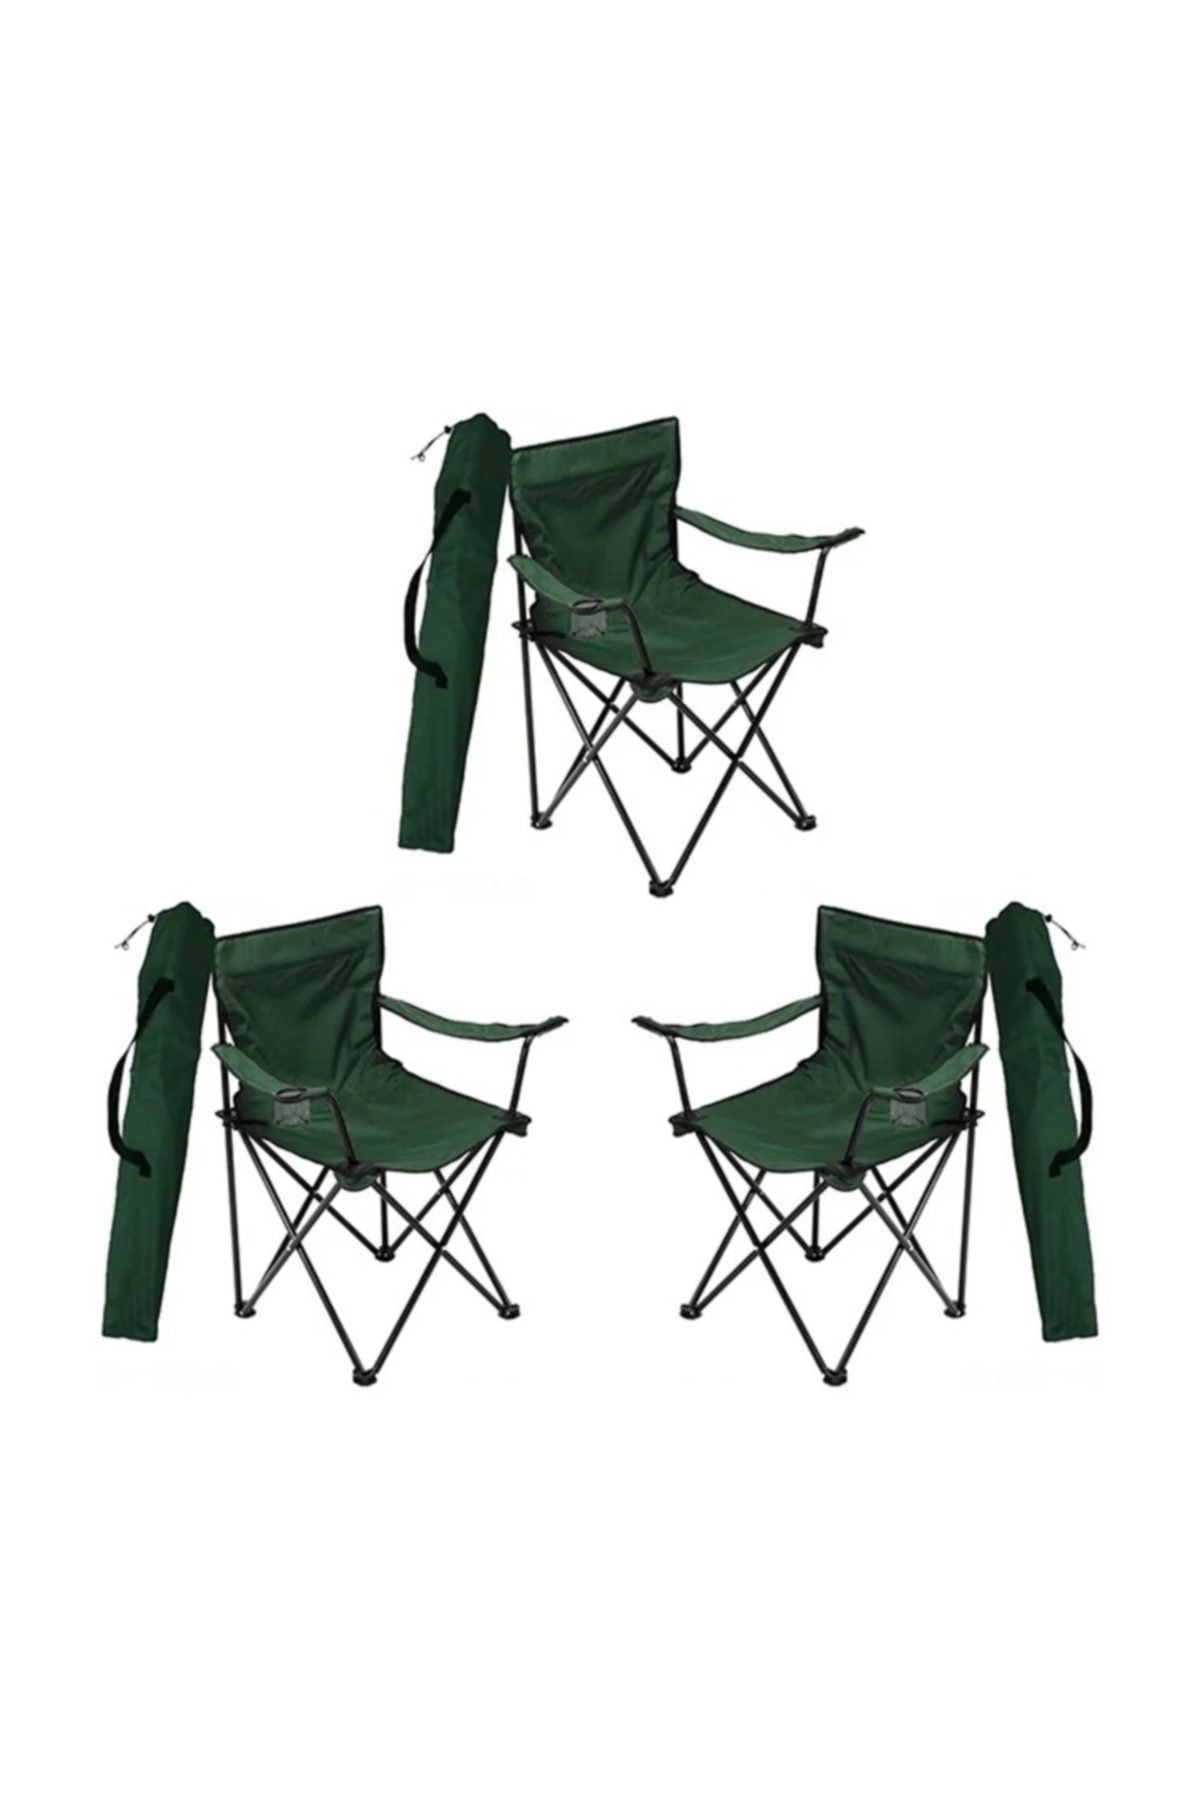 3 Adet Kamp Sandalyesi Katlanır Sandalye Bahçe Koltuğu Piknik Plaj Balkon Sandalyesi Yeşil